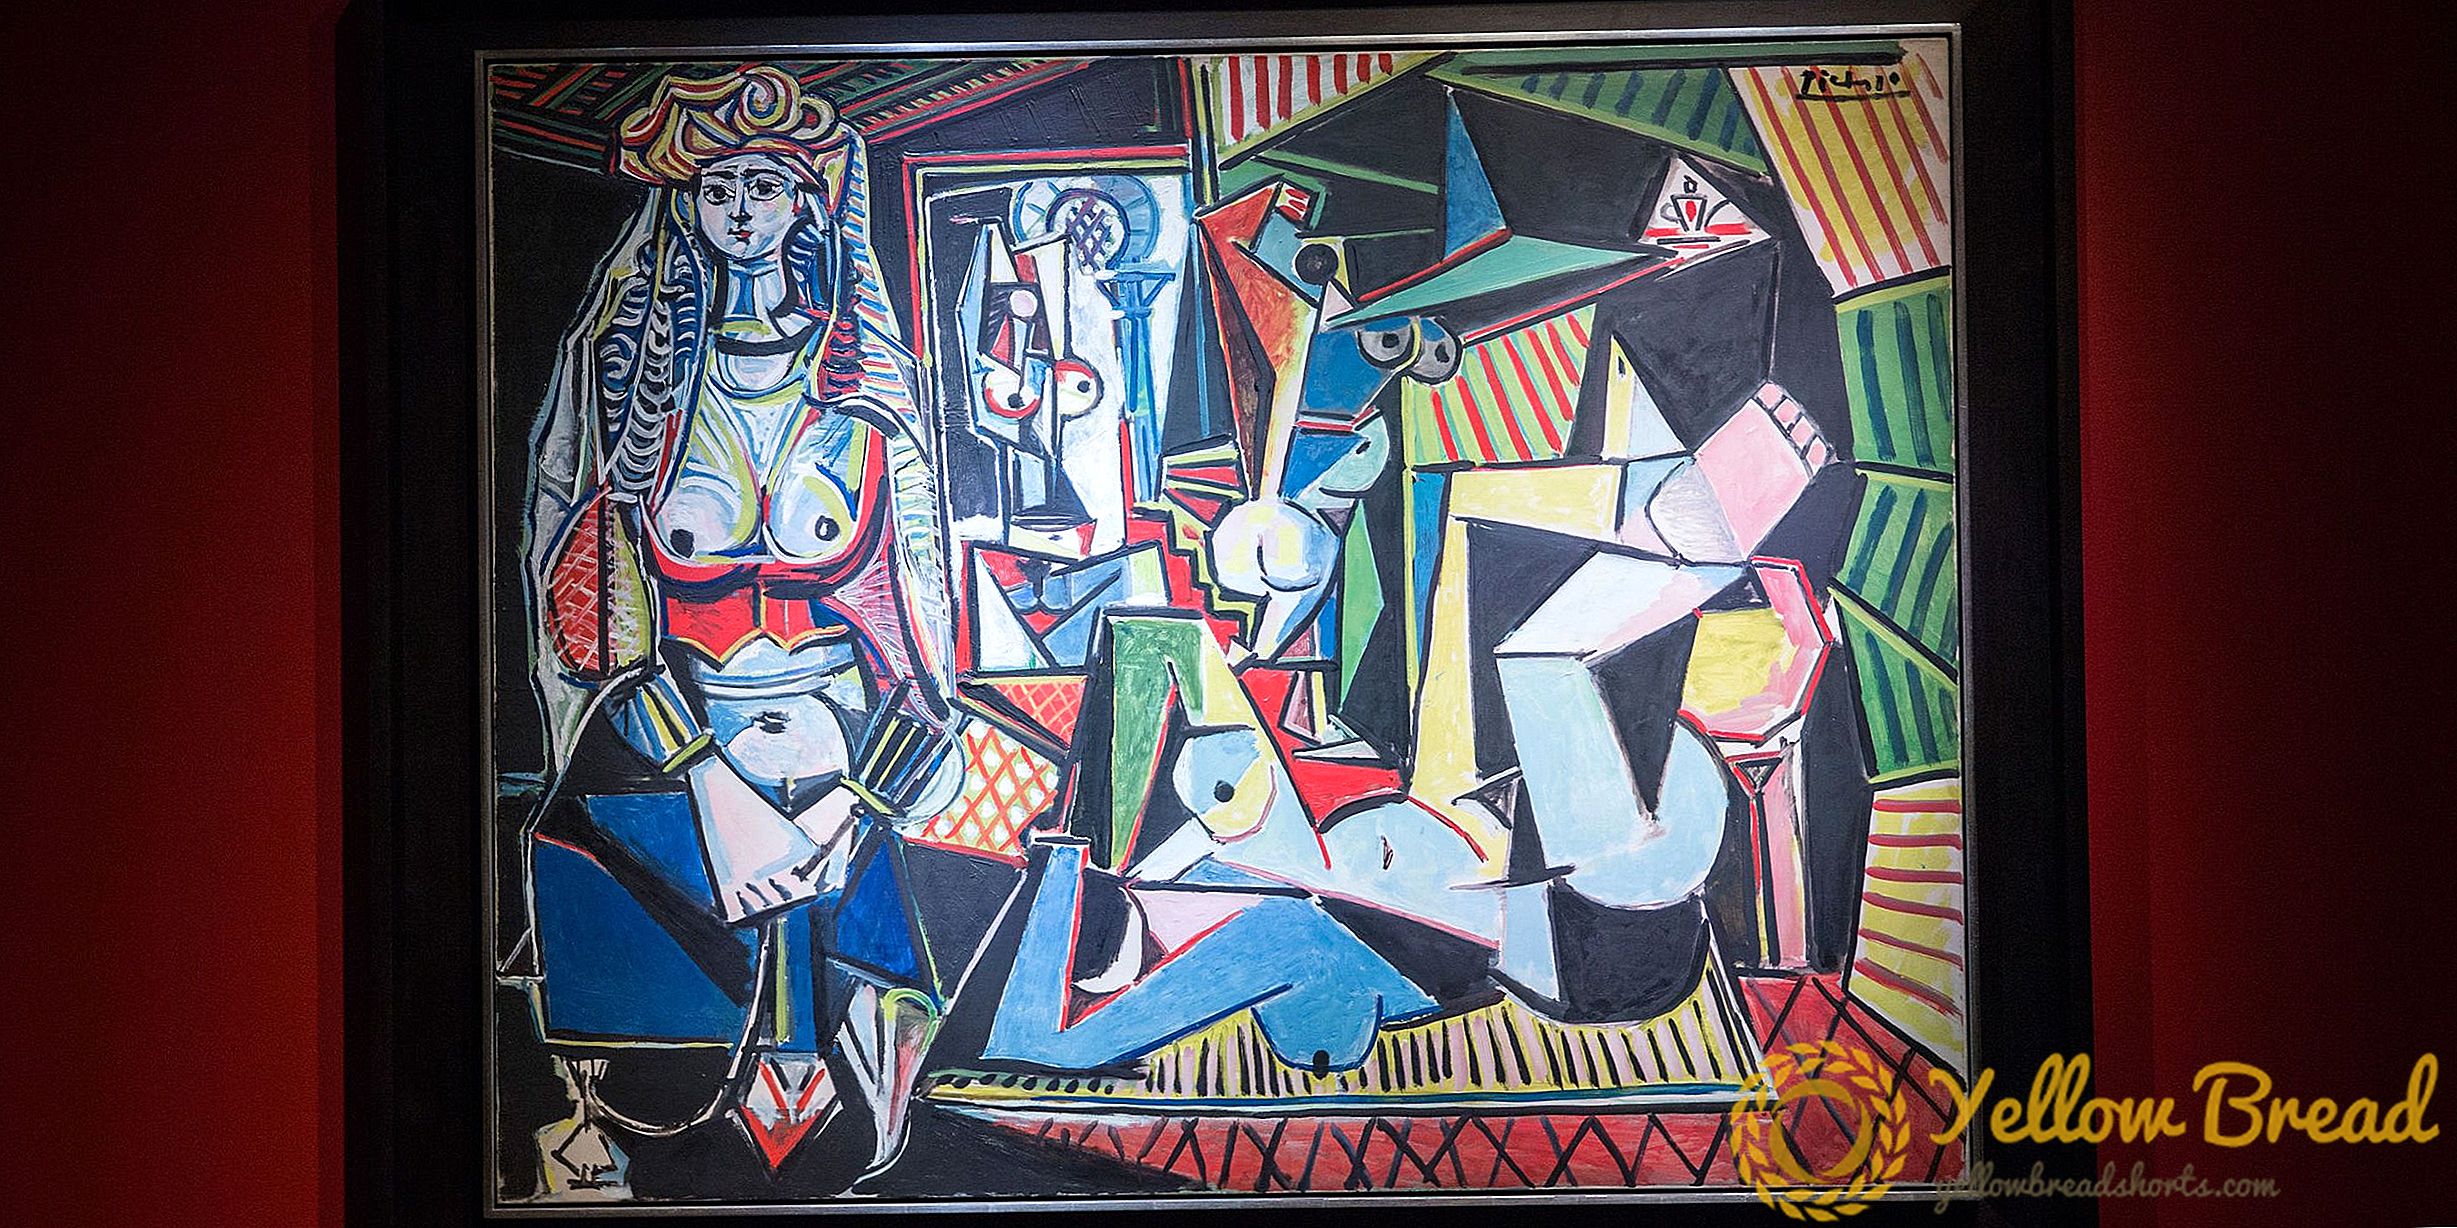 $ 175 ล้าน Picasso เป็นจิตรกรรมที่แพงที่สุดเท่าที่เคยขายในการประมูล